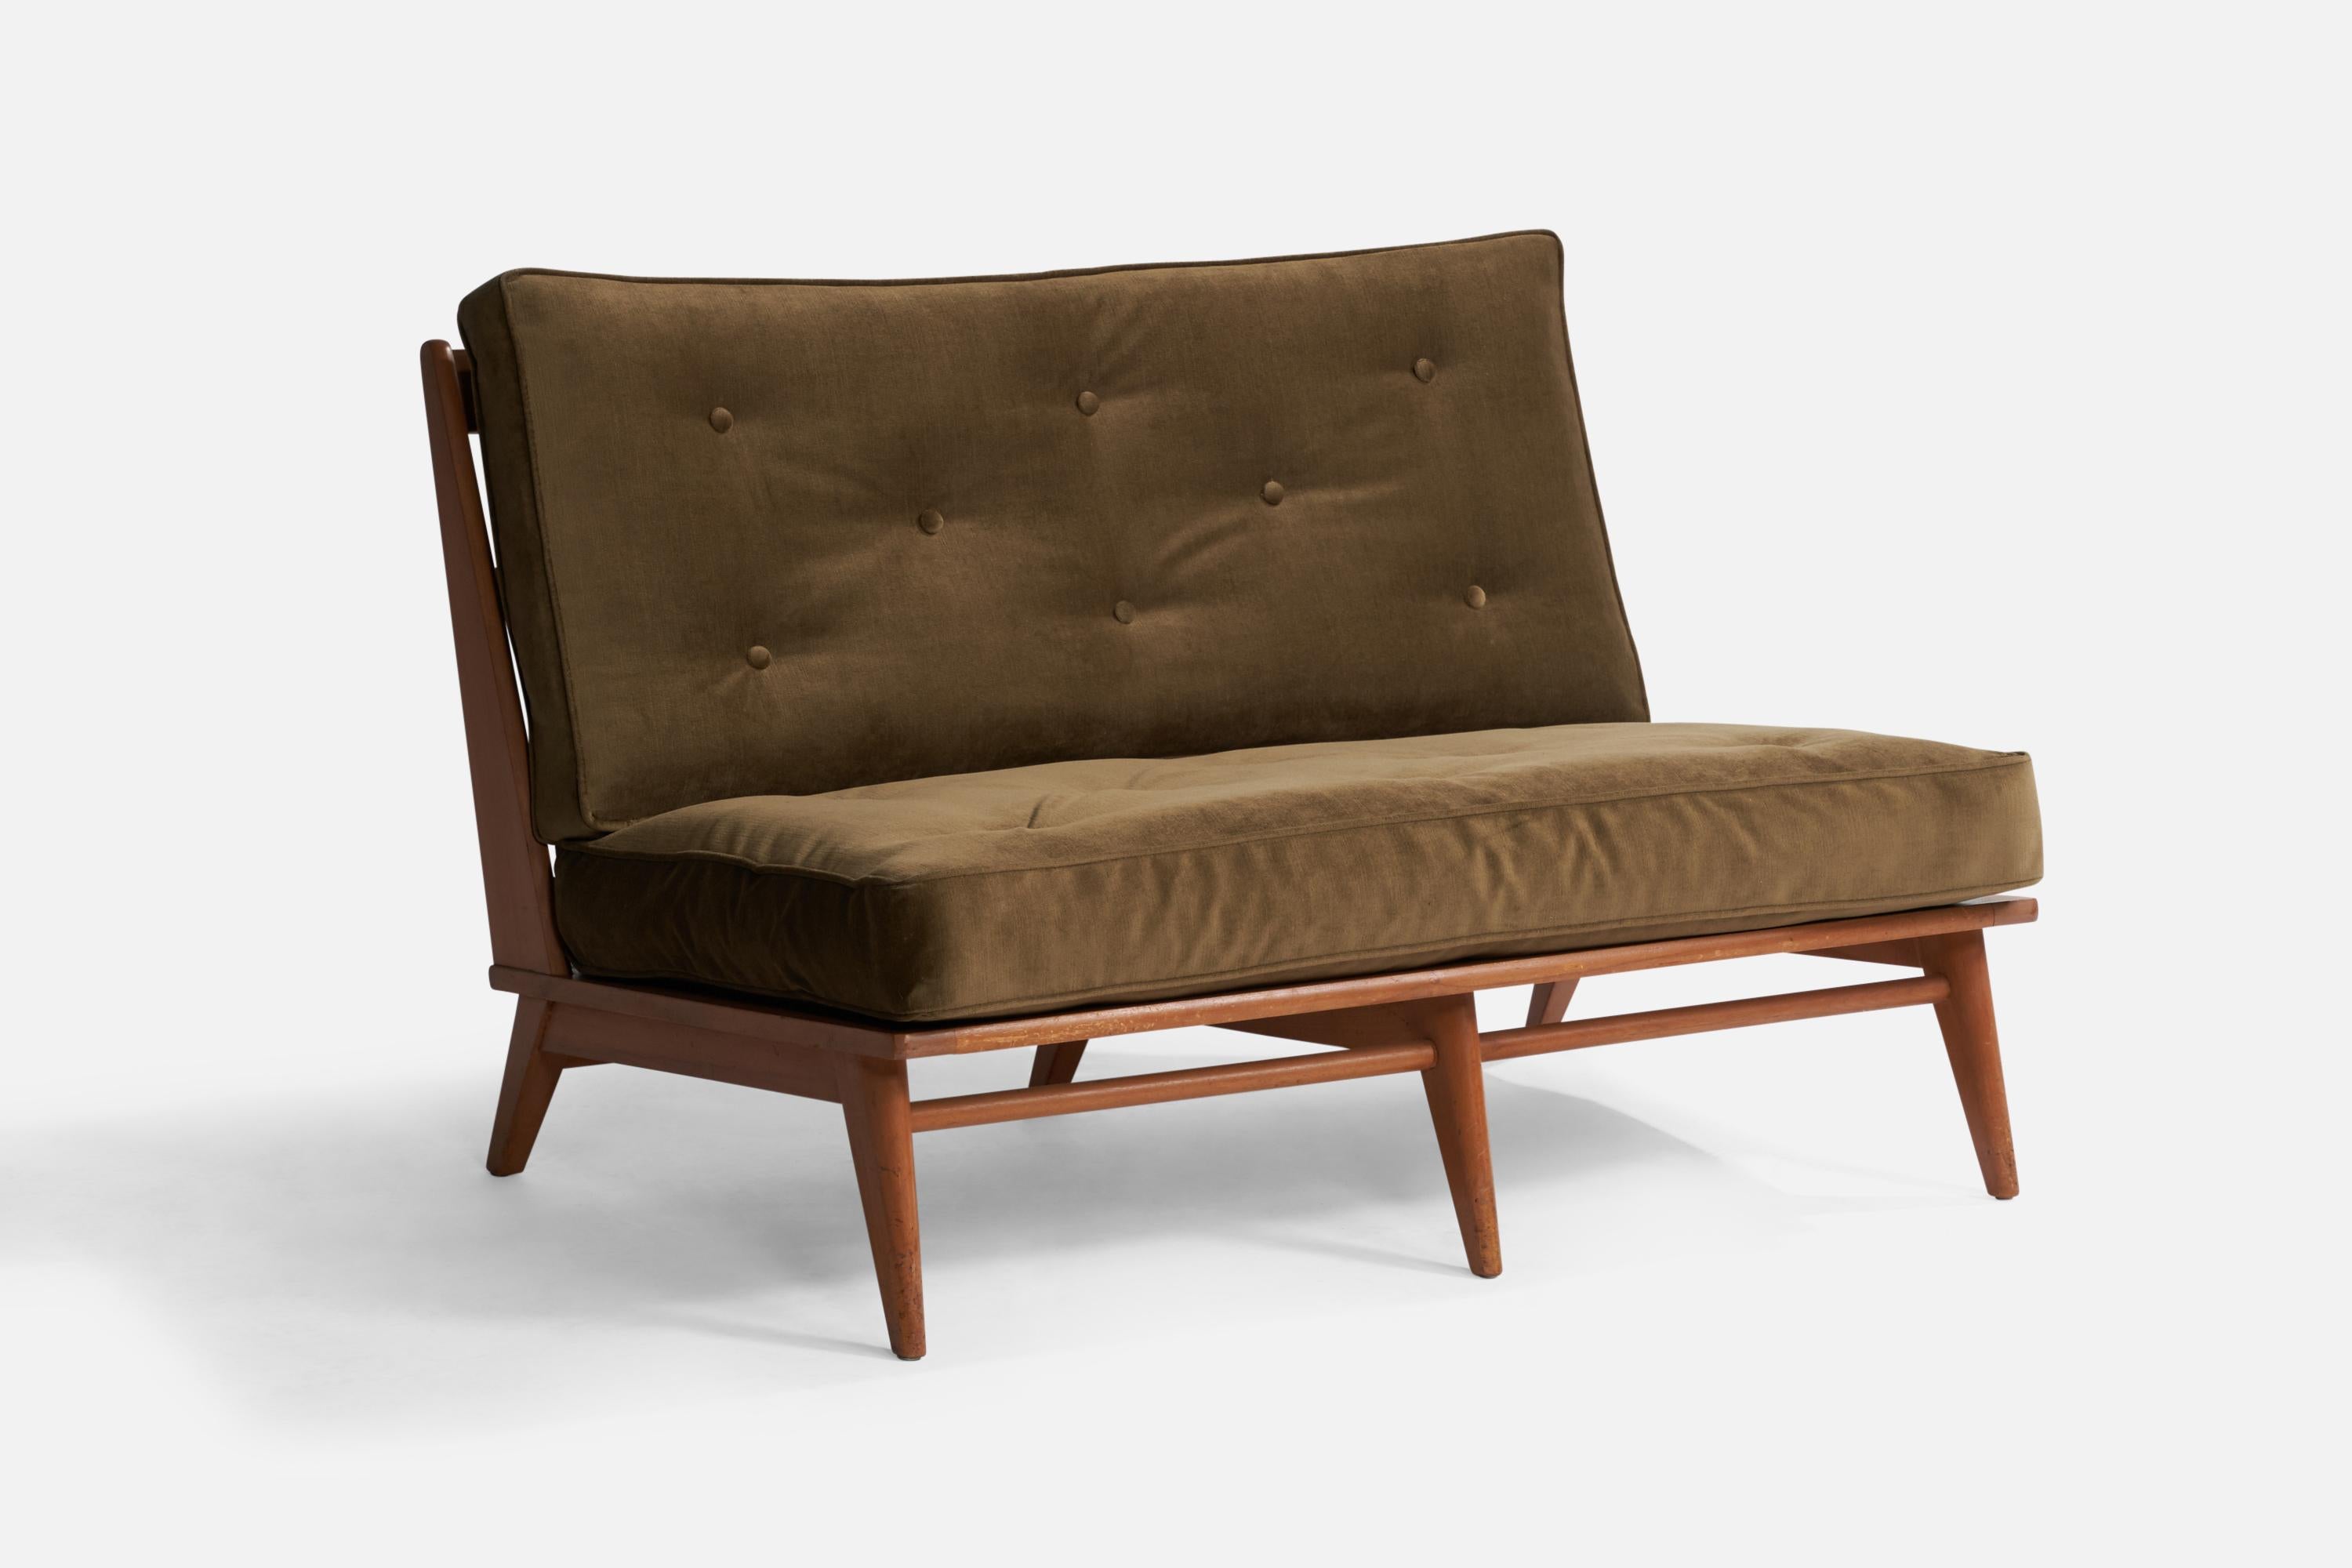 Ein Sofa aus Ahornholz und grünem Samtstoff, entworfen und hergestellt von Heywood Wakefield, USA, 1950er Jahre.

Sitzhöhe 16